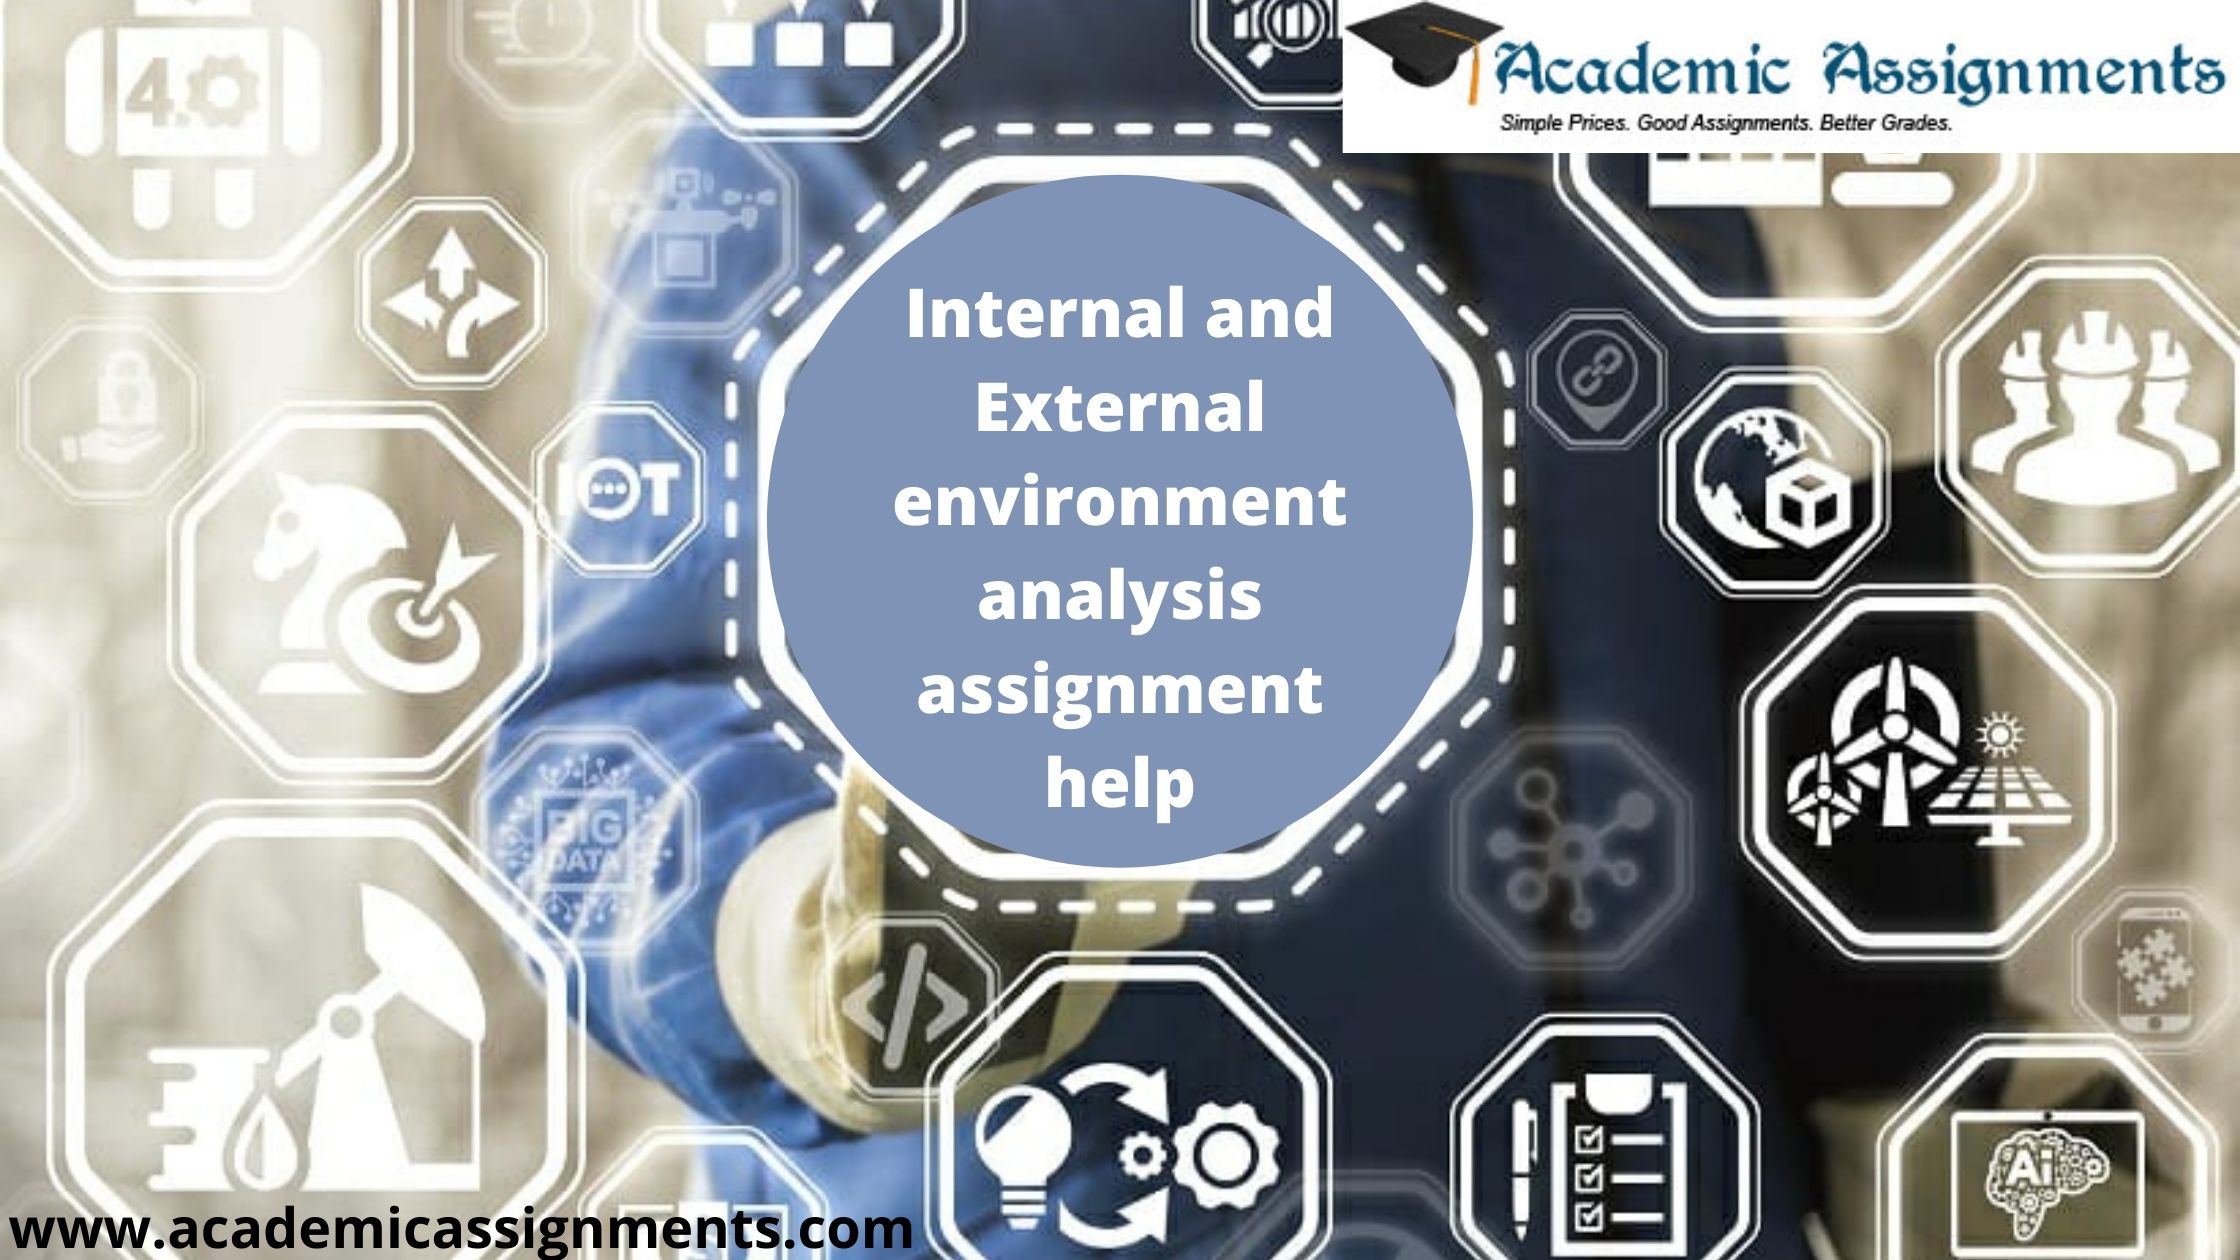 Internal and External environment analysis assignment help